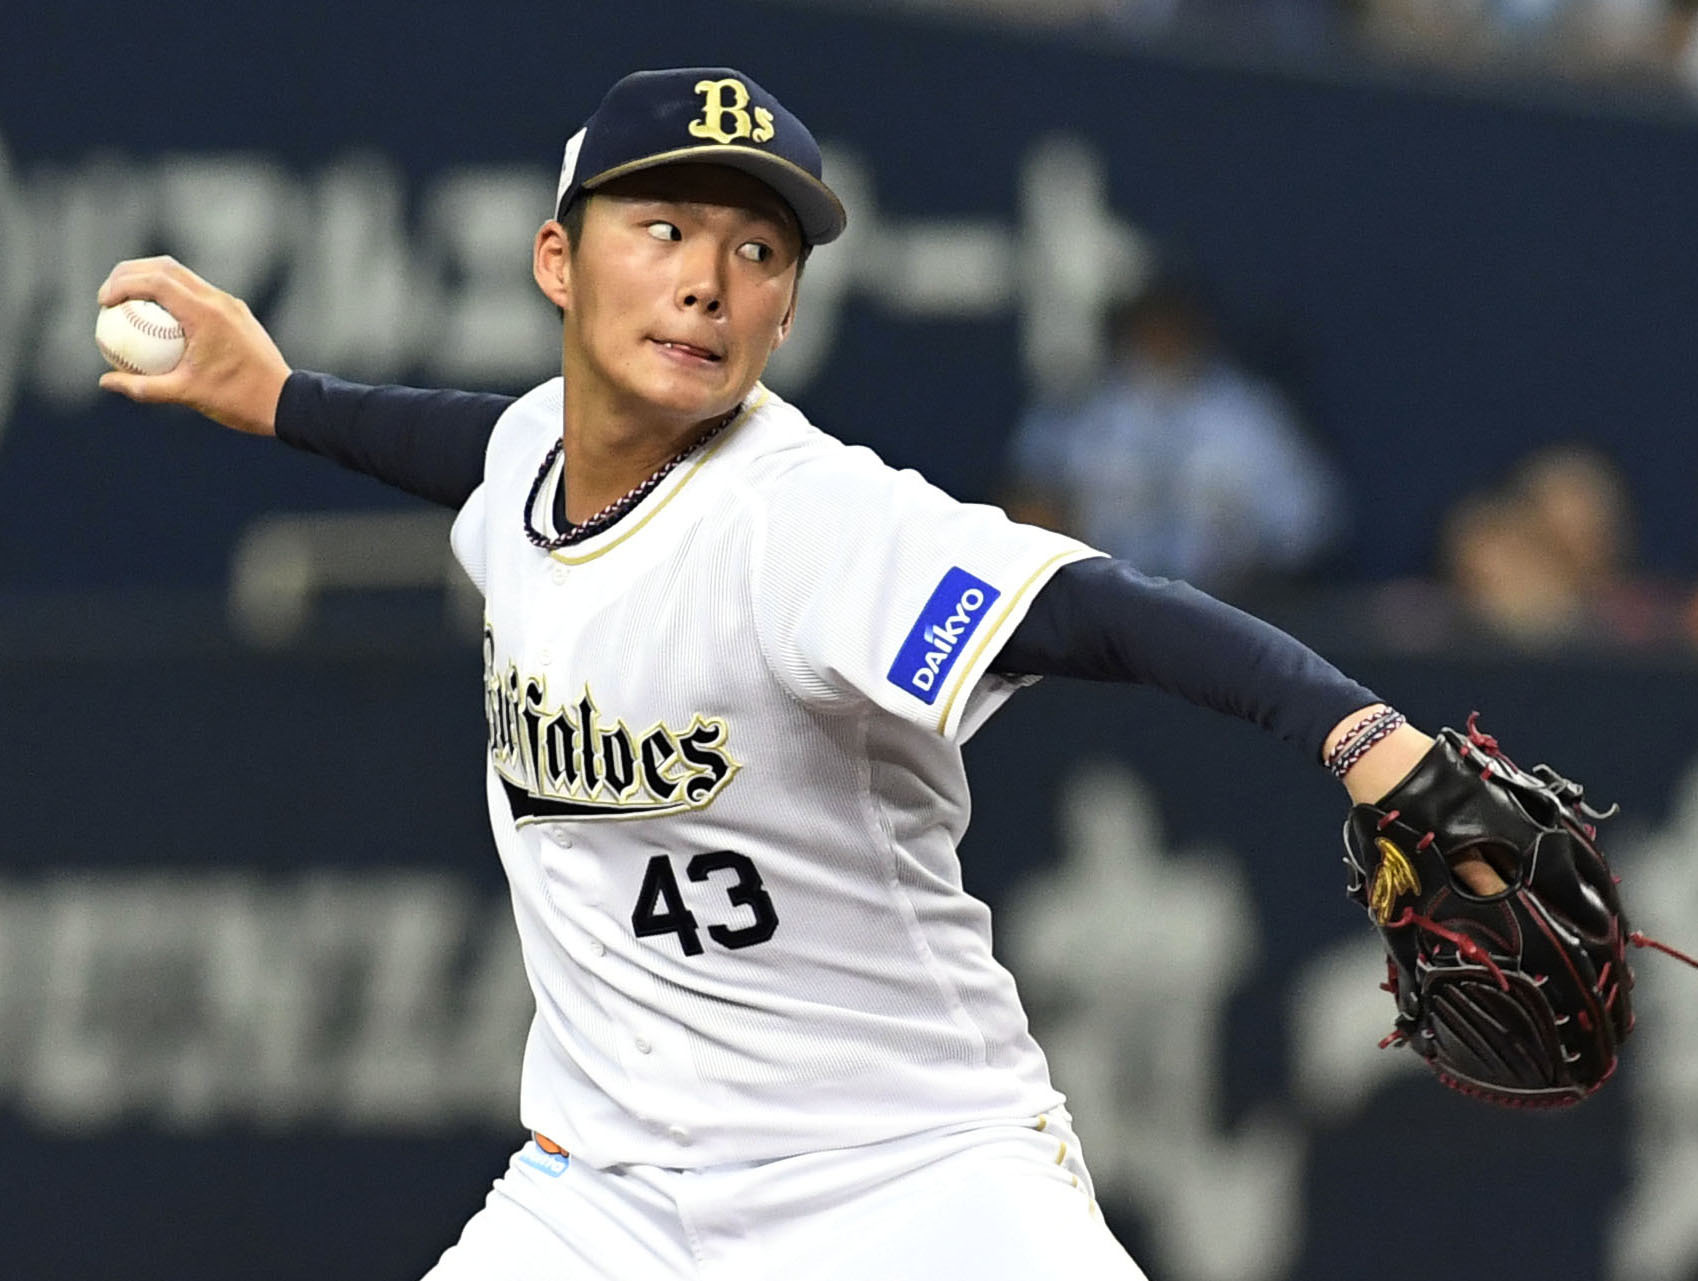 160キロも夢じゃない 若き豪腕 山本由伸が侍ジャパンの中心になれるか トップチーム Baseball Gate